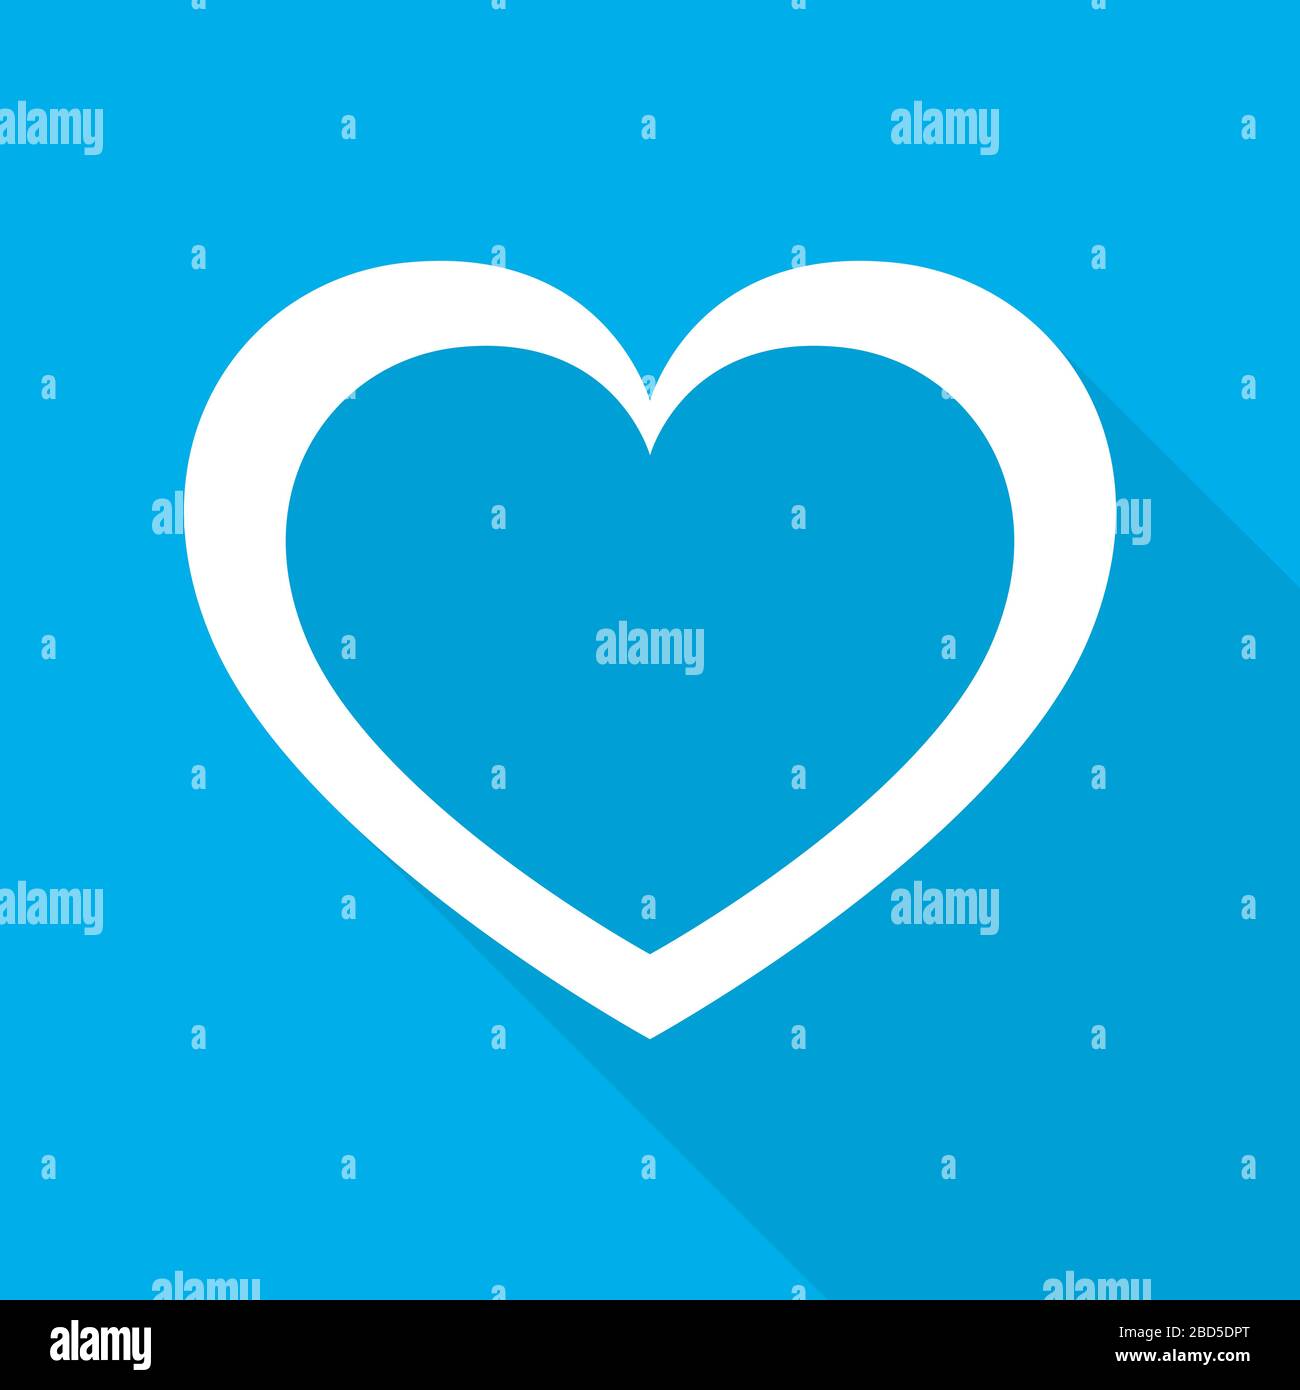 Weißes Herz für den Valentinstag. Herz mit langem Schatten auf blauem Hintergrund in flachem Design. Vektorgrafiken. Stock Vektor